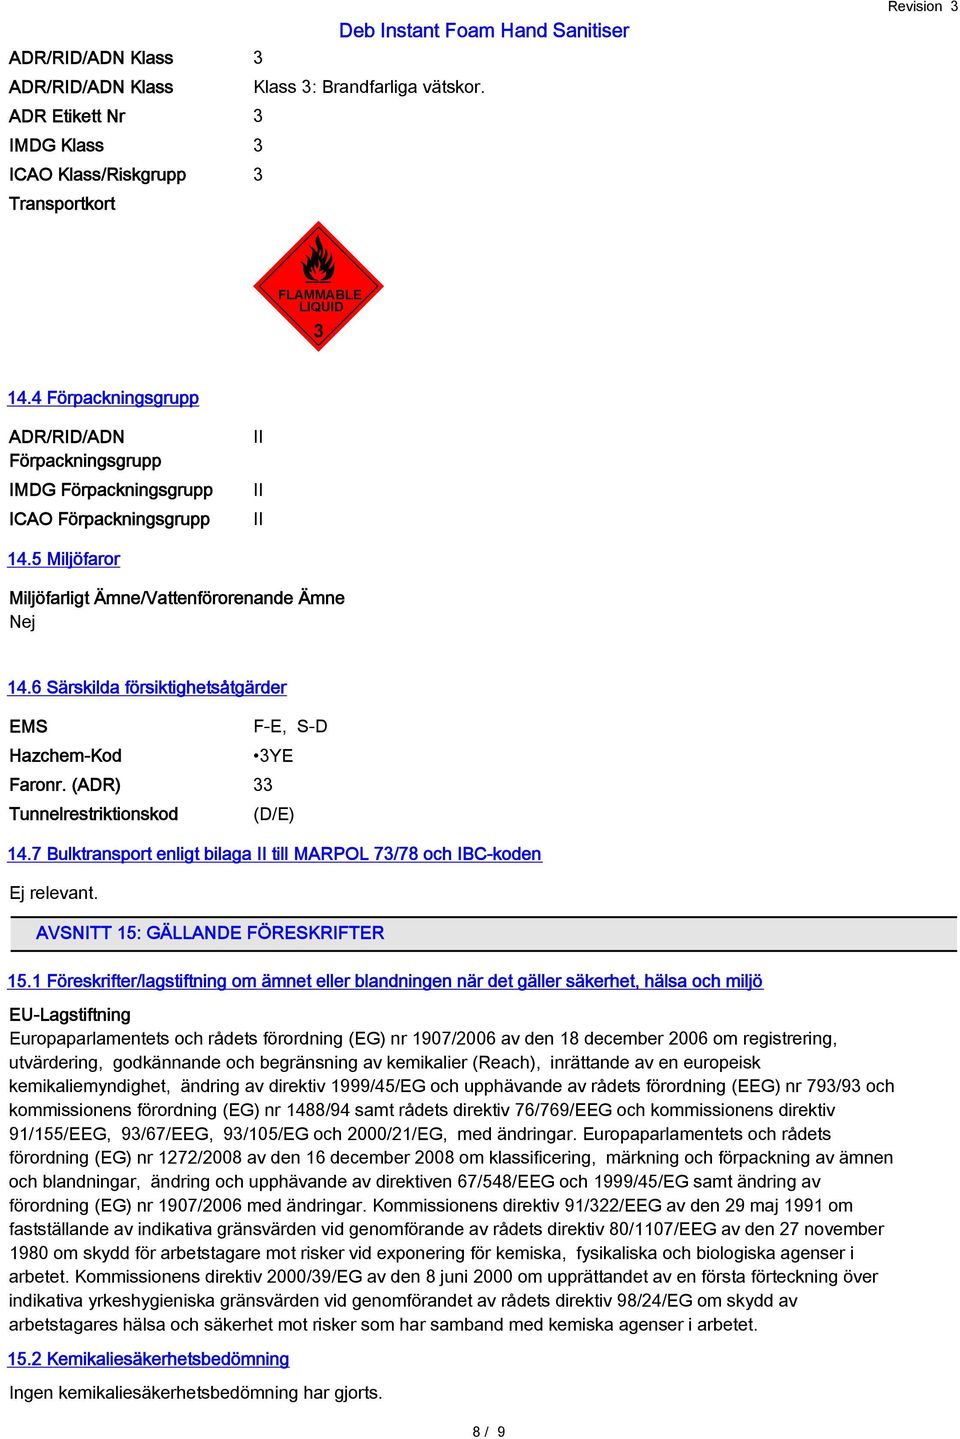 6 Särskilda försiktighetsåtgärder EMS Hazchem-Kod Faronr. (ADR) 33 Tunnelrestriktionskod F-E, S-D 3YE (D/E) 14.7 Bulktransport enligt bilaga II till MARPOL 73/78 och IBC-koden Ej relevant.